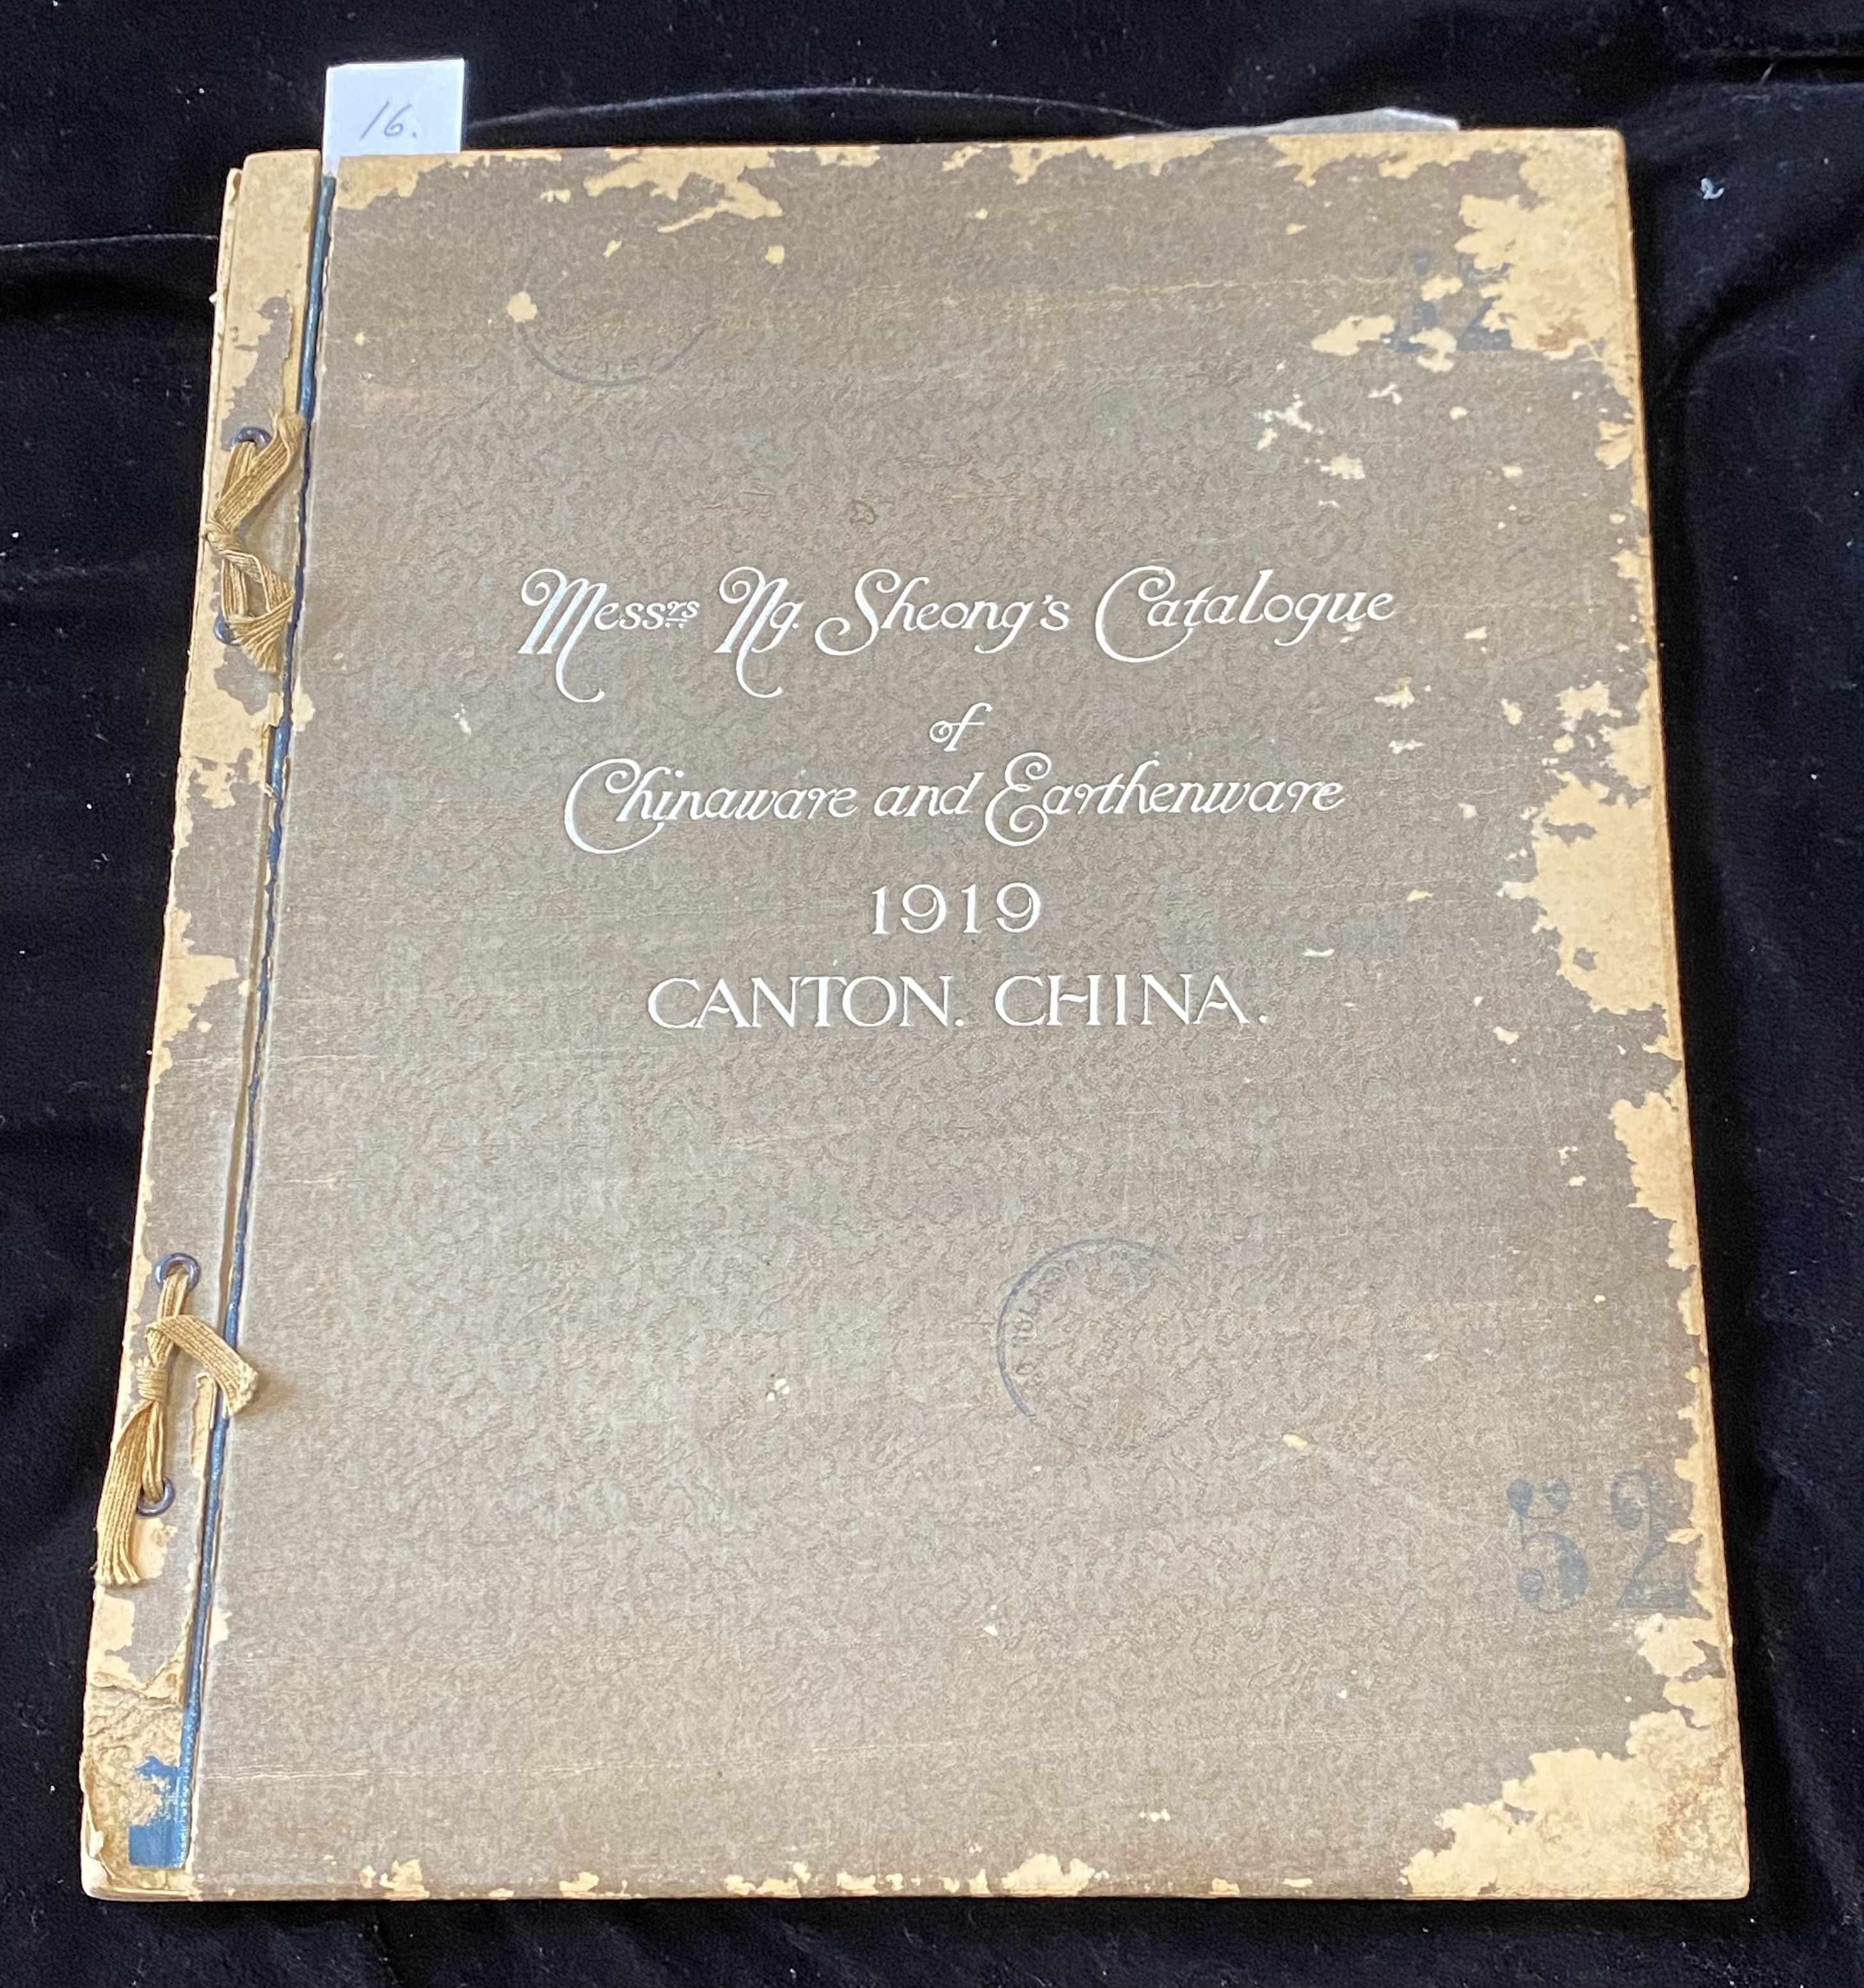 MESSRS. NG. SHEONG’S CATALOGUE OF CHINAWARE AND EARTHENWARE, CANTON, CHINA, 1919 - Image 2 of 12